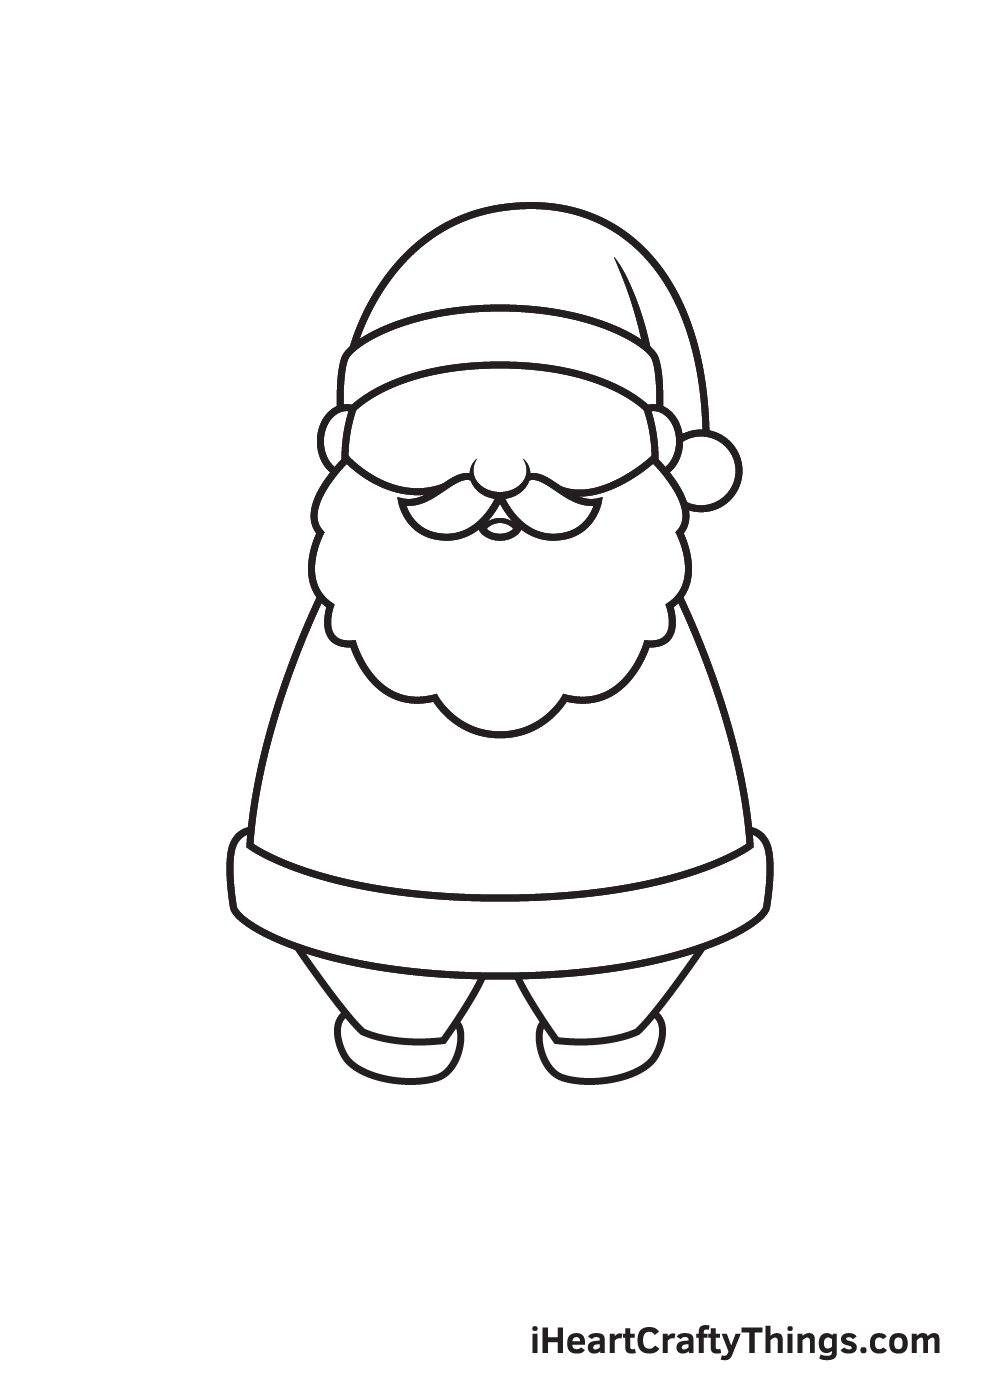 Vẽ ông già Noel - Bước 6